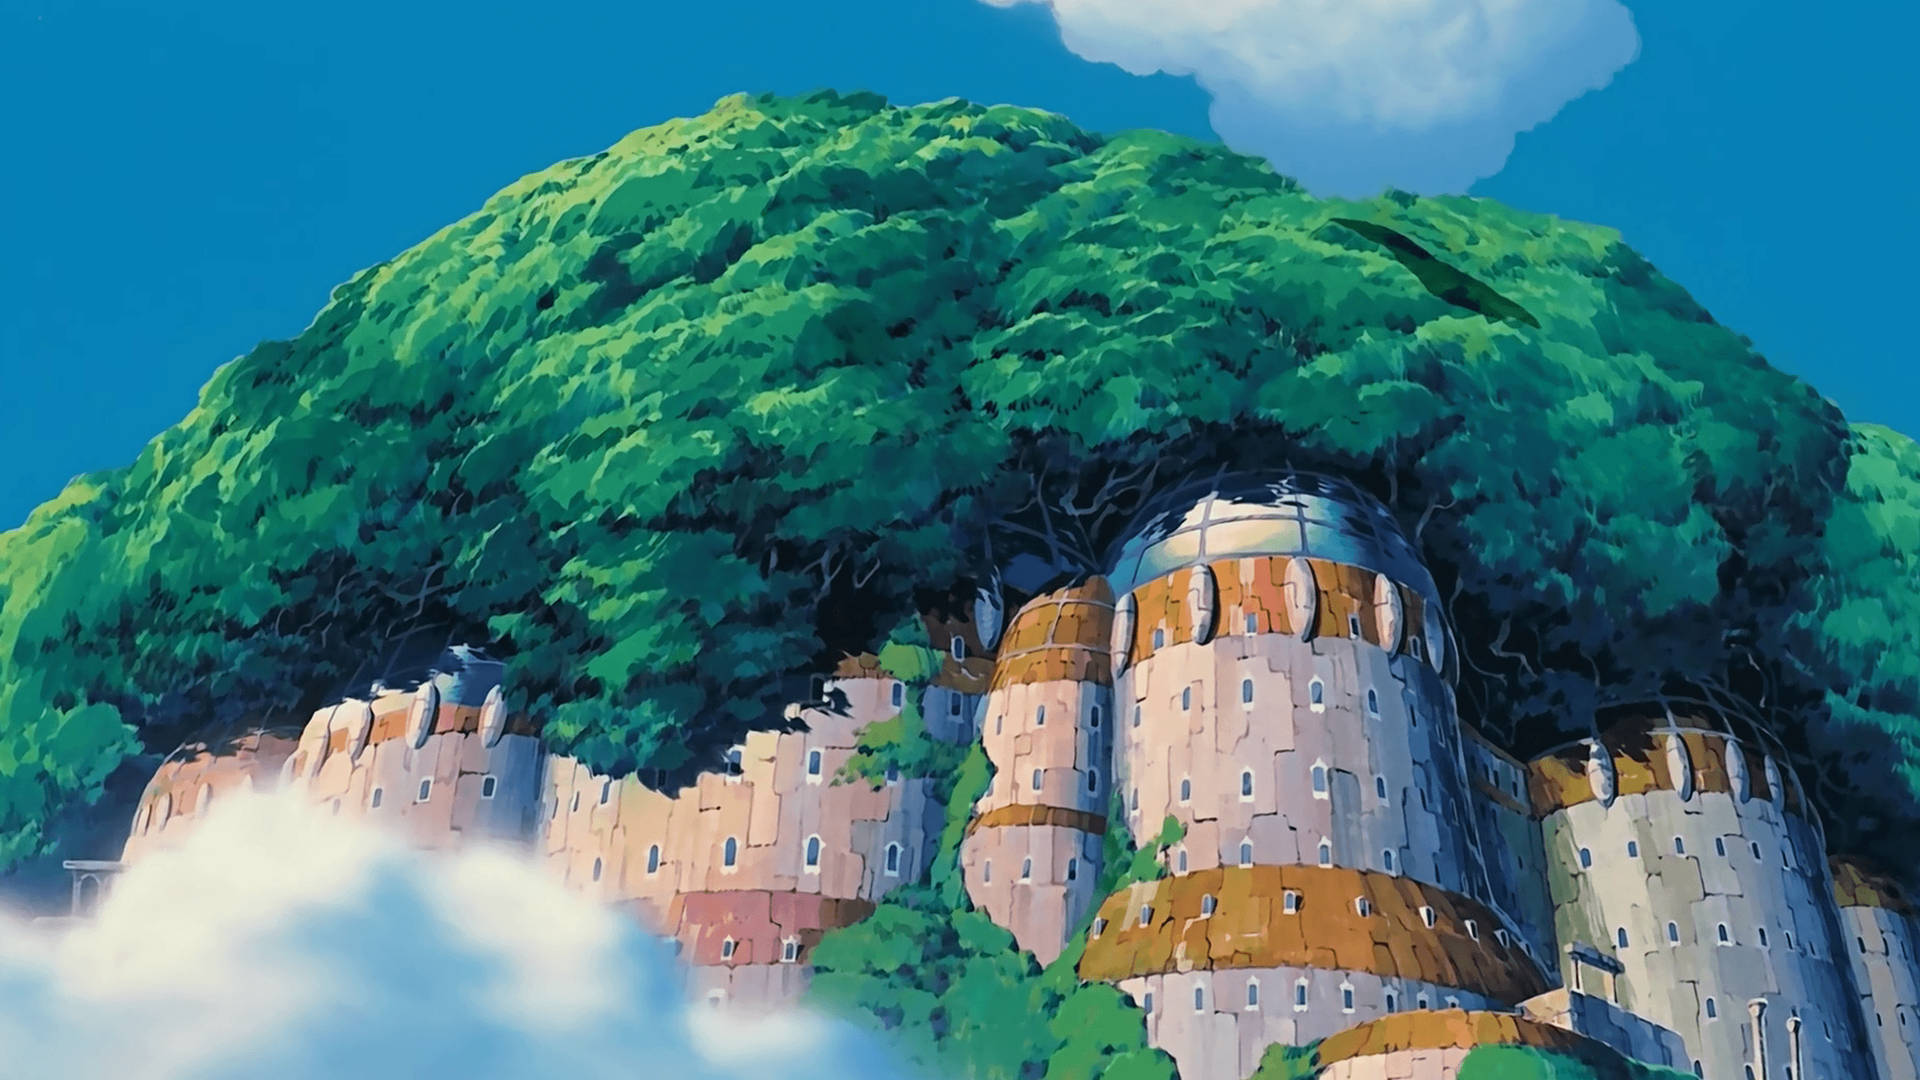 Ghibli Huge Building Picture